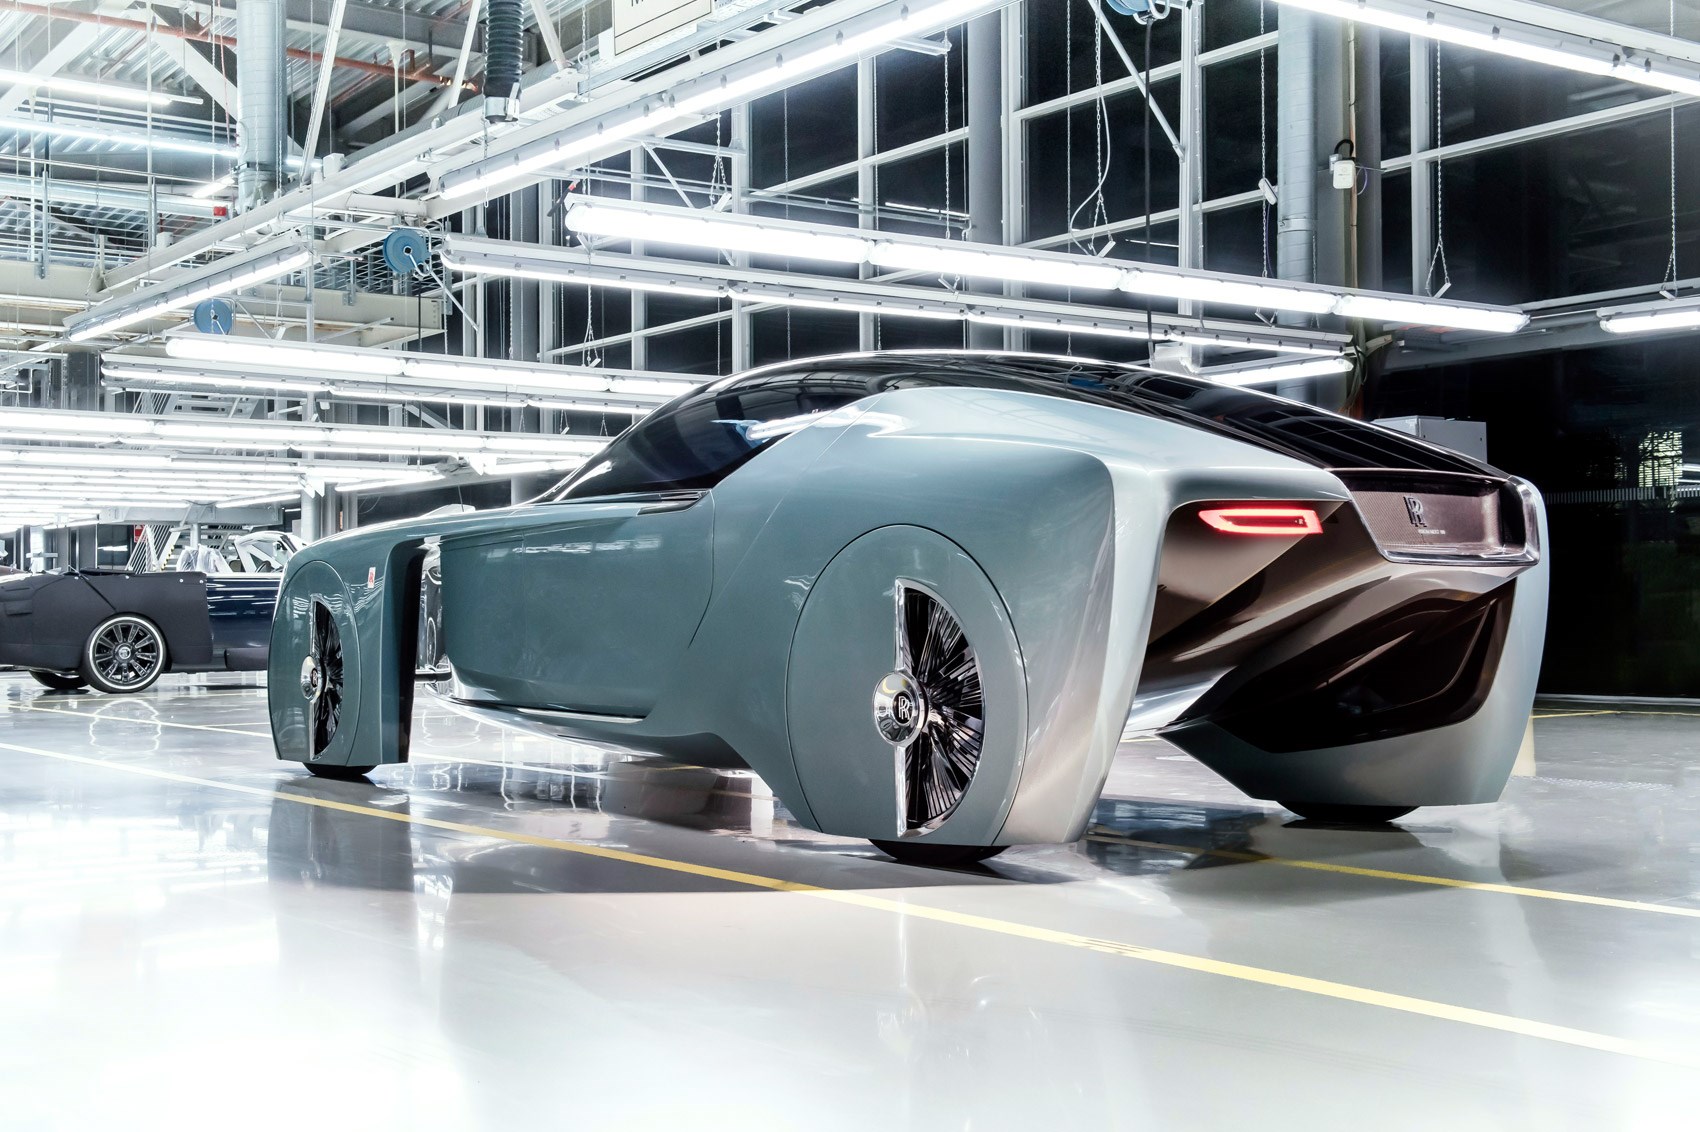 BMW tiết lộ RollsRoyce và Mini Vision Next 100 concept  Tin Tức   Otosaigon